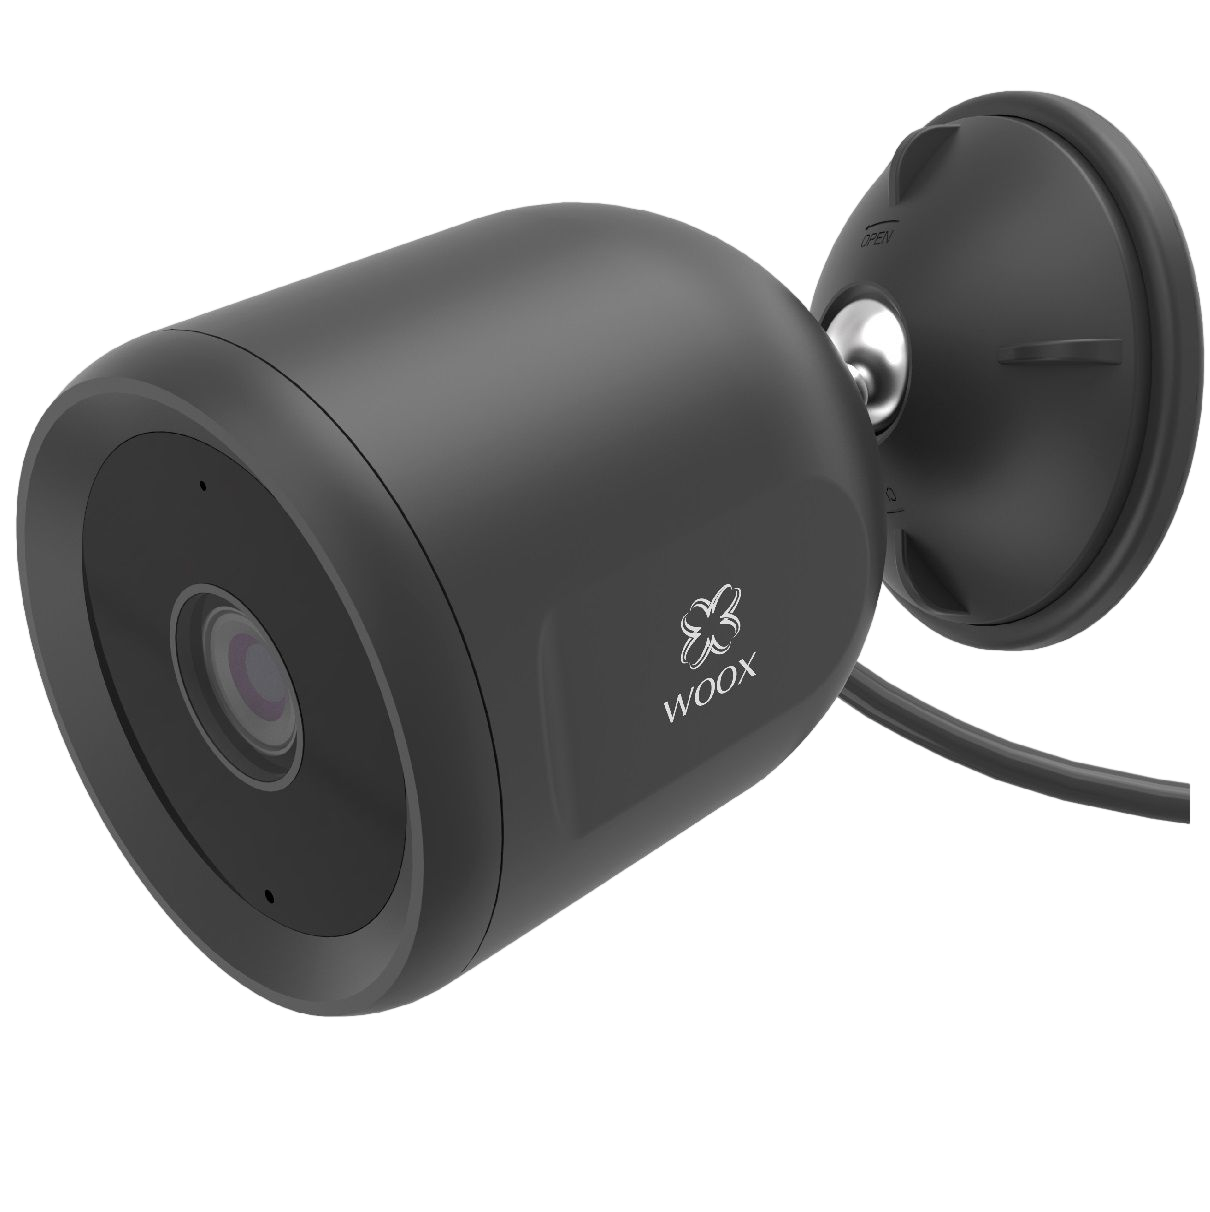 verdrahtete WOOX R9044 - Außen-Sicherheitskamera - Außen-Sicherheitskamera 1080p 1080p verdrahtete R9044,